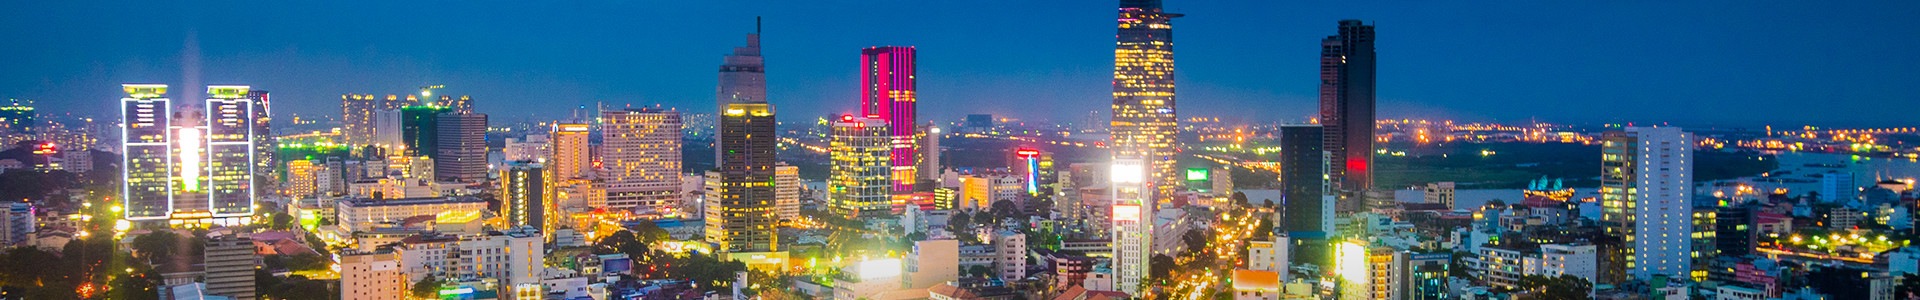 Vol Ho Chi Minh - TUI